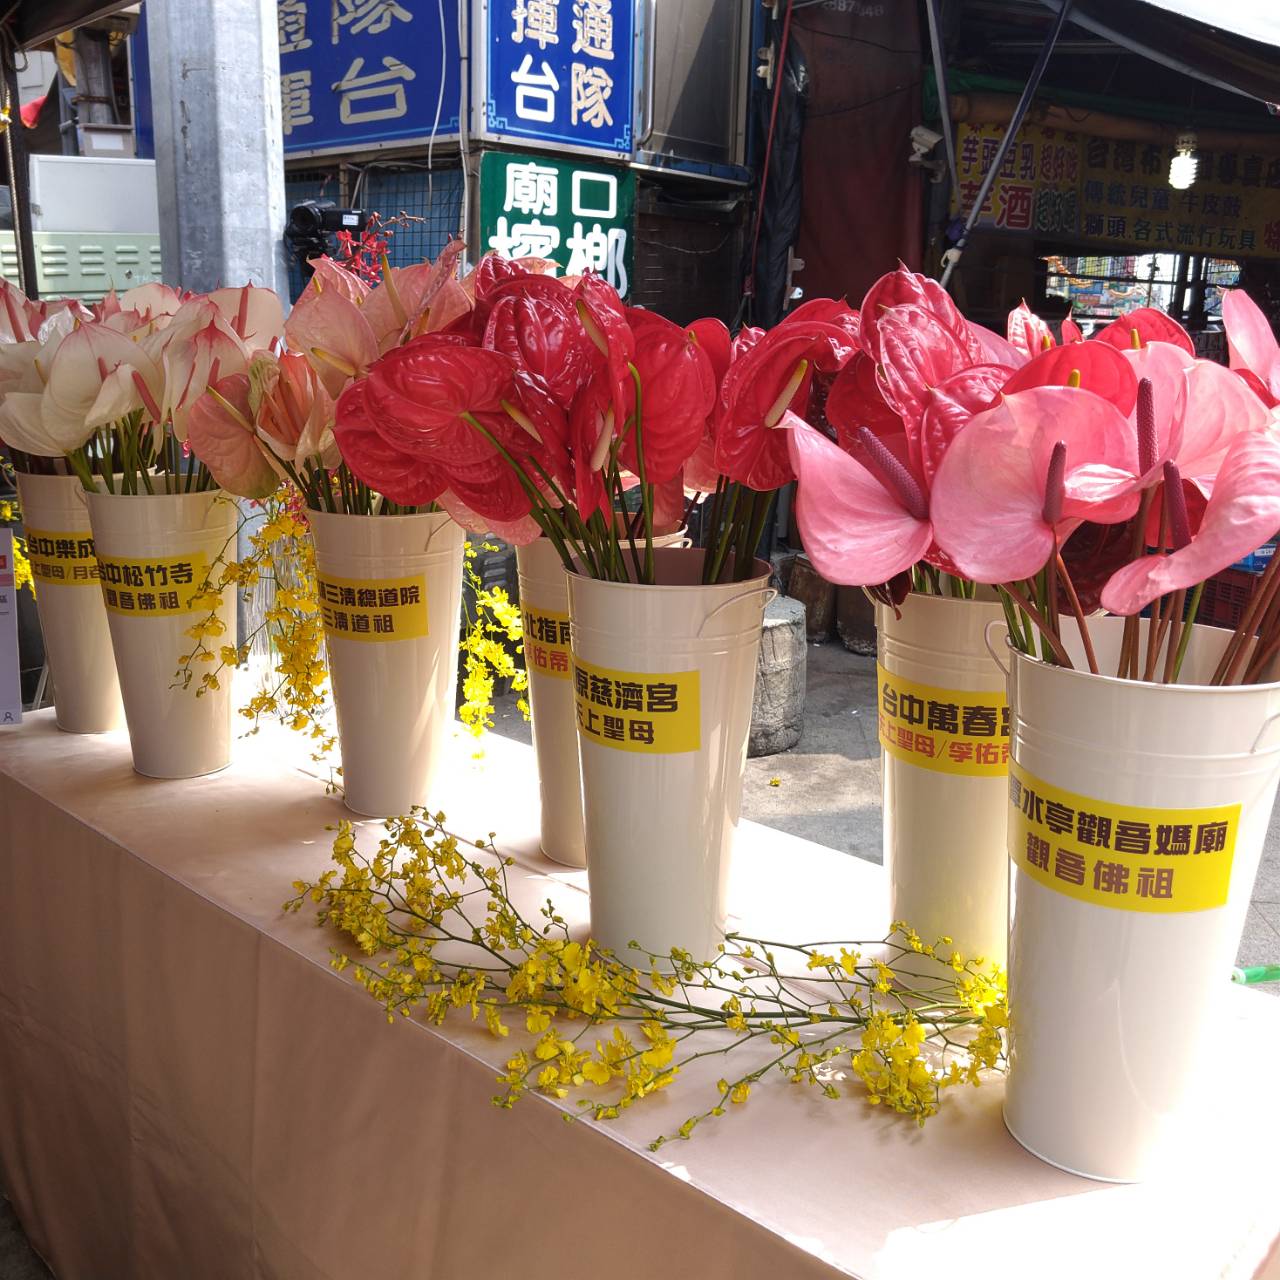 廟方提供單支鮮花讓民眾持花或供花祈福。(記者張越安翻攝)